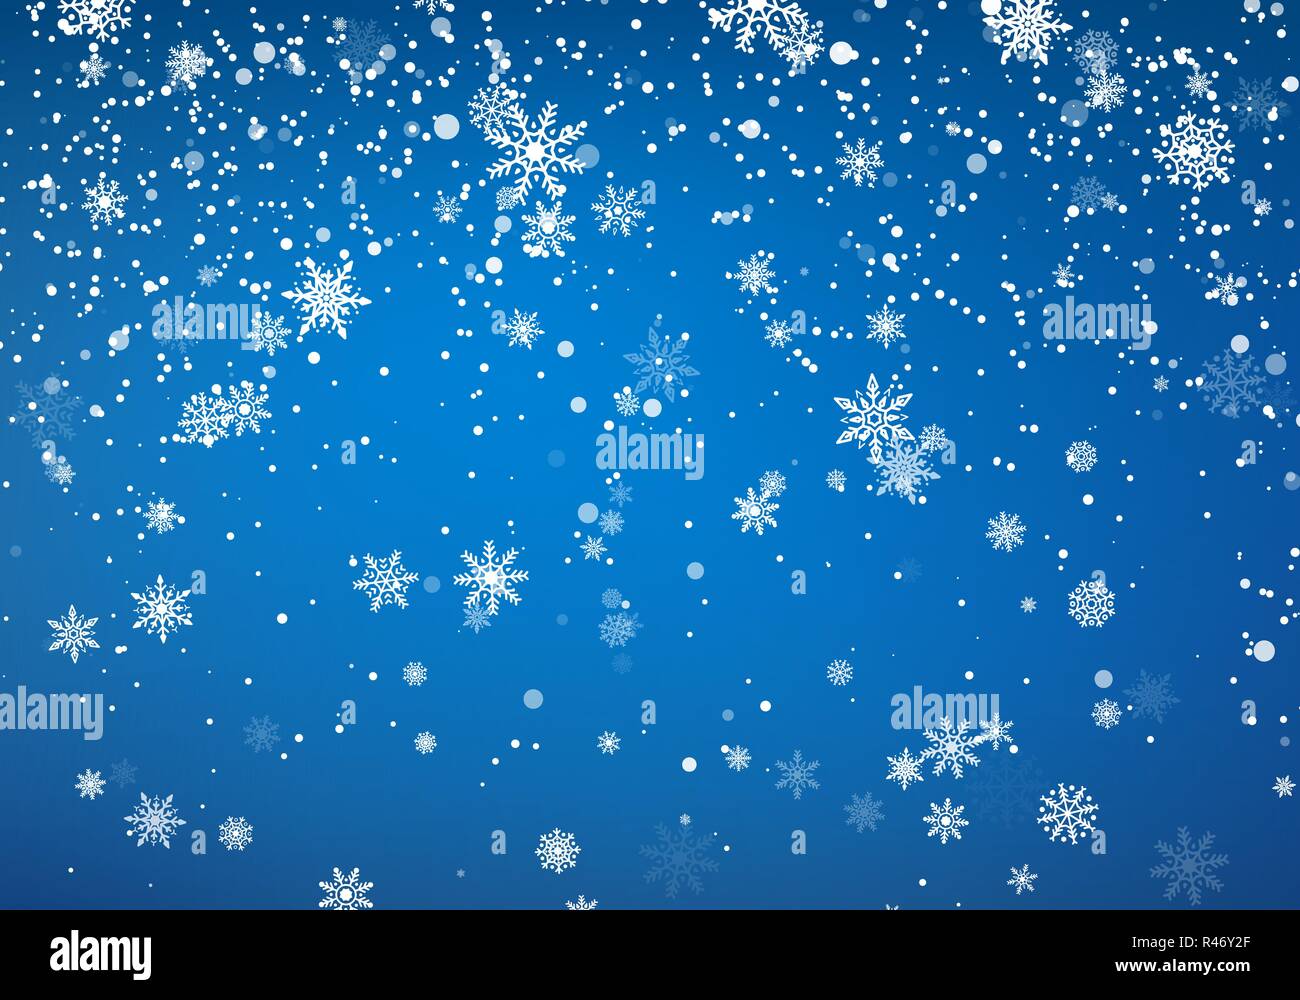 Schneefall Weihnachten Hintergrund. Flying Schneeflocken und Sterne auf Winter und blauer Himmel. Winter wite Schneeflocke Vorlage. Vector Illustration Stock Vektor